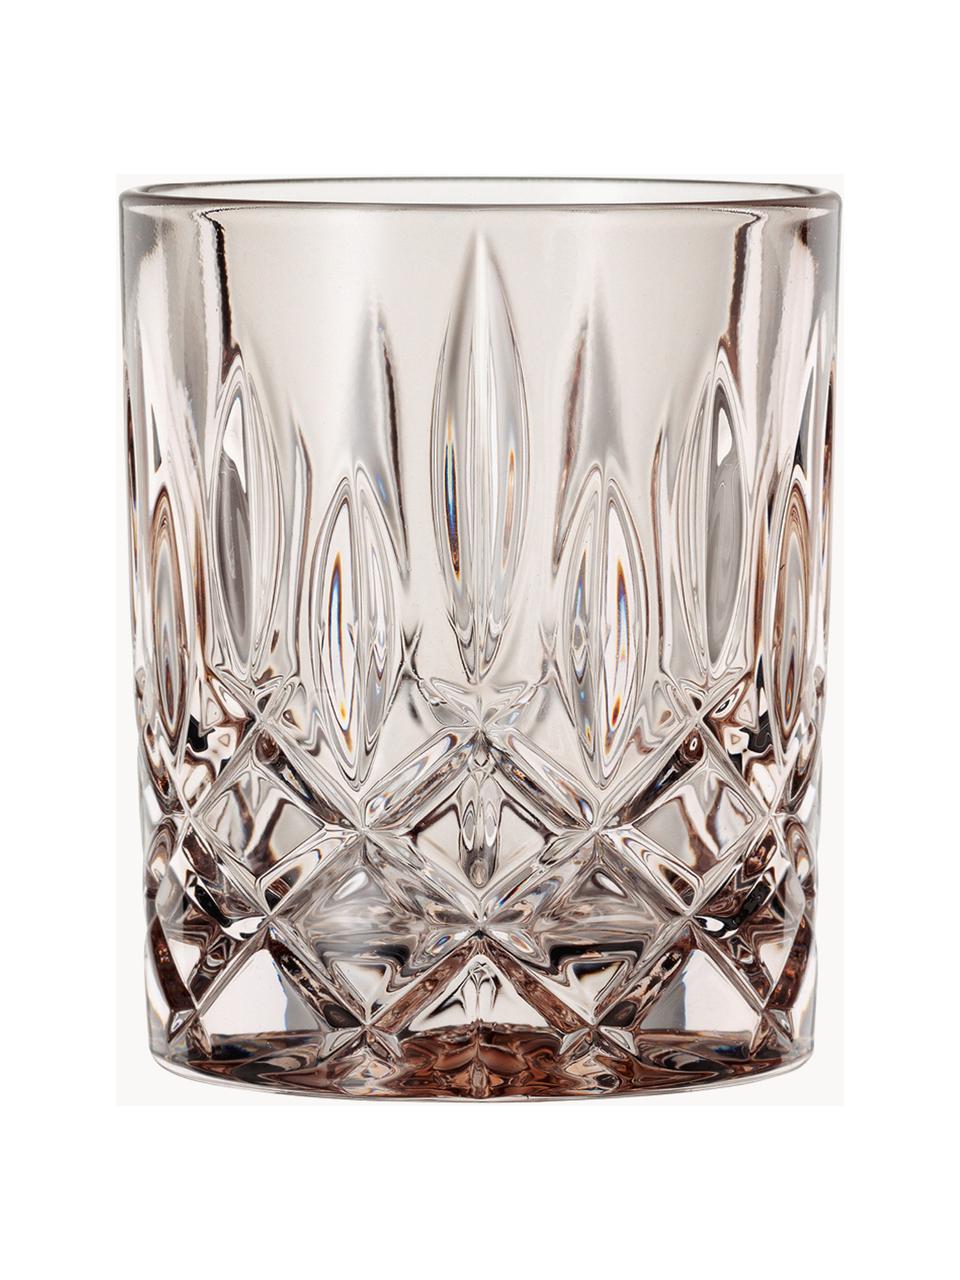 Kristall-Whiskygläser Noblesse, 2 Stück, Kristallglas, Beige, Ø 8 x H 10 cm, 300 ml